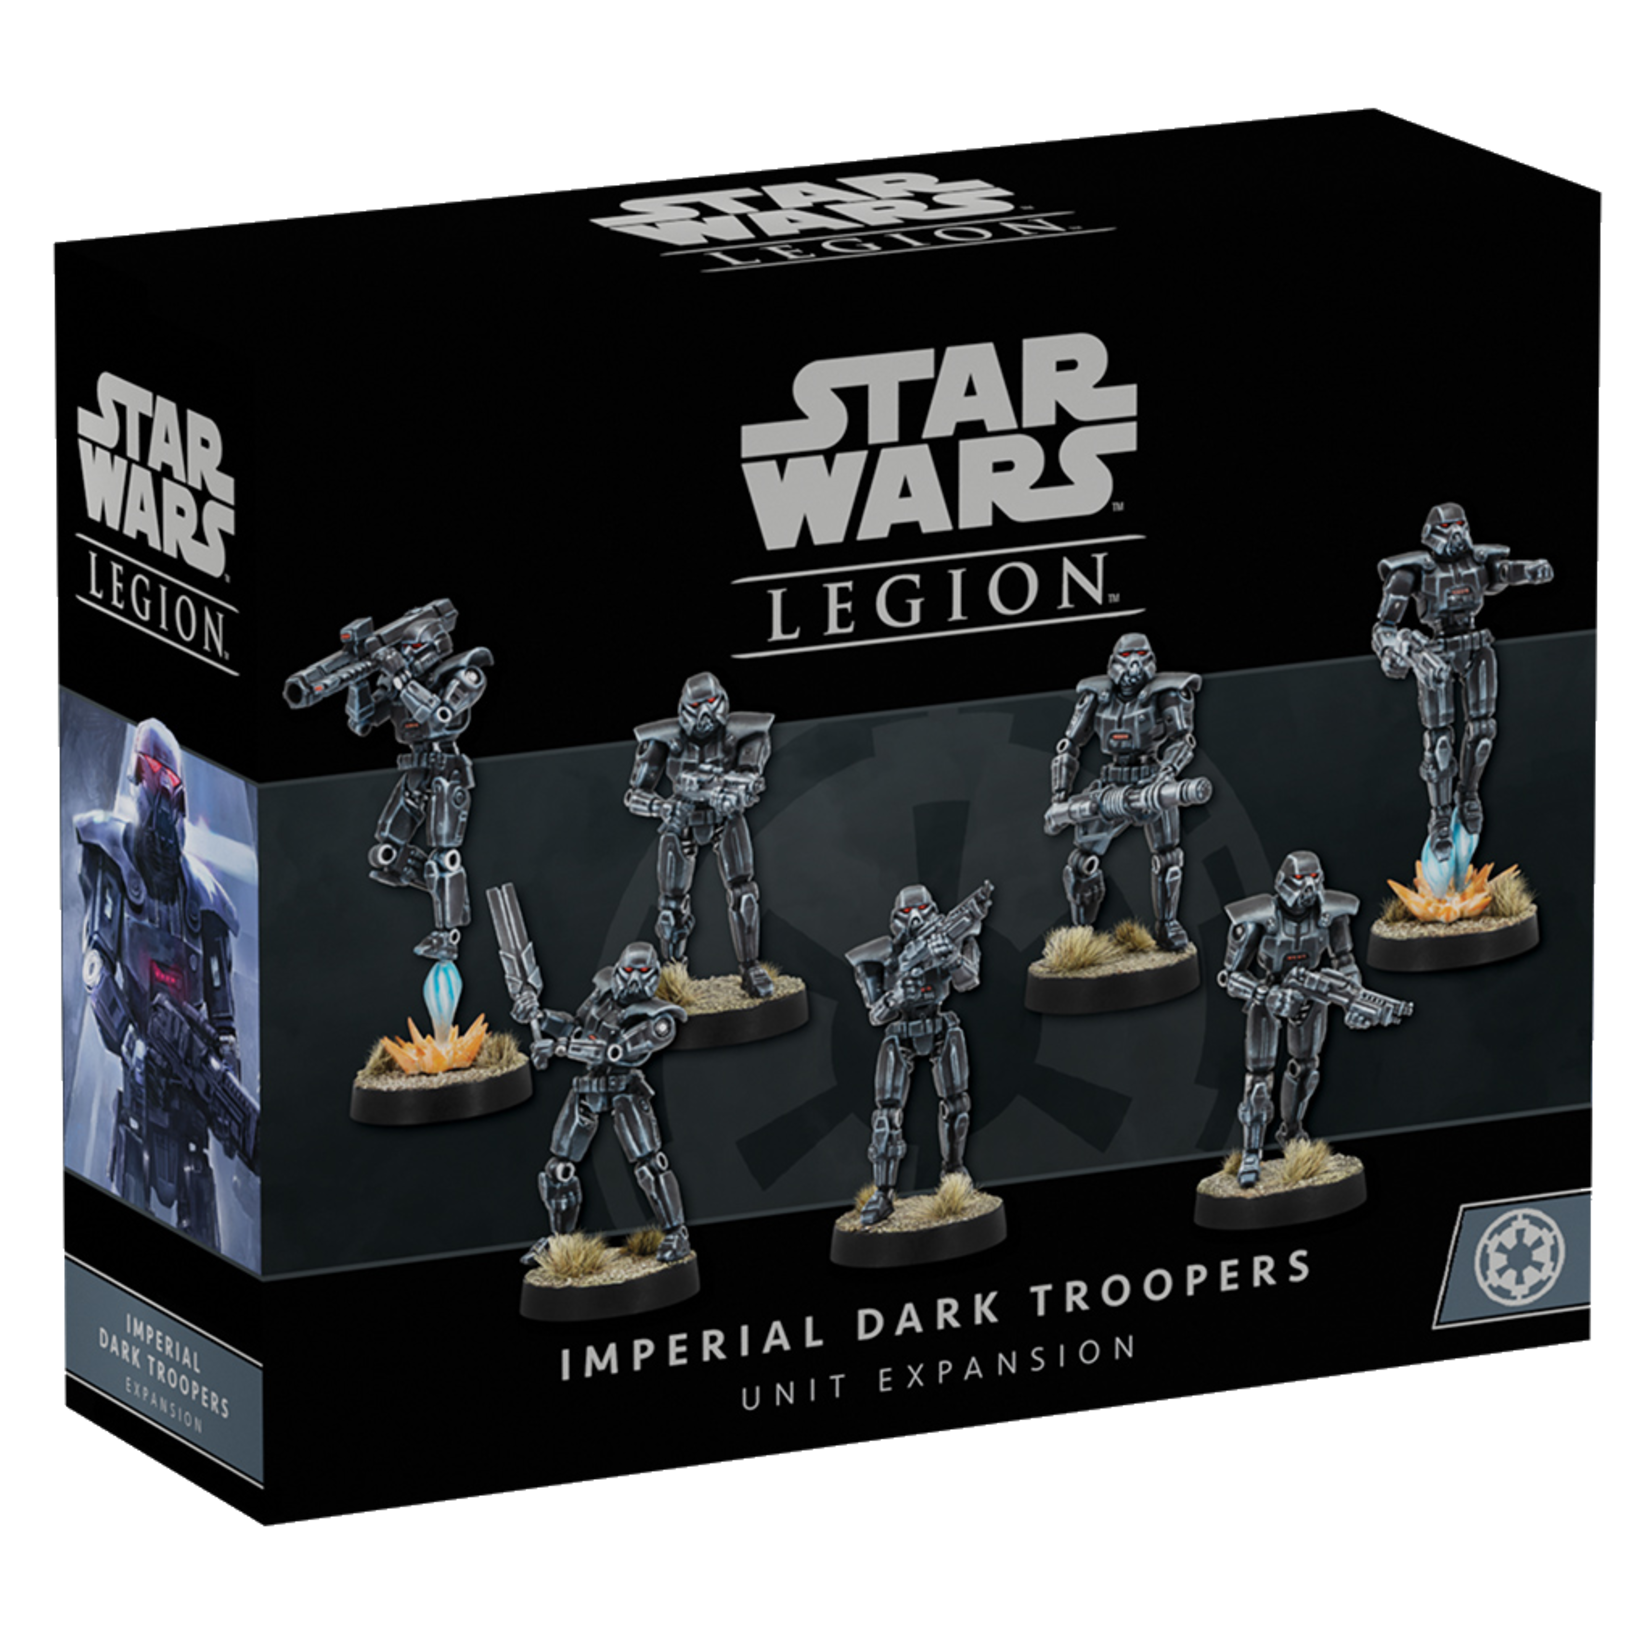 Star wars: Legion Dark Troopers